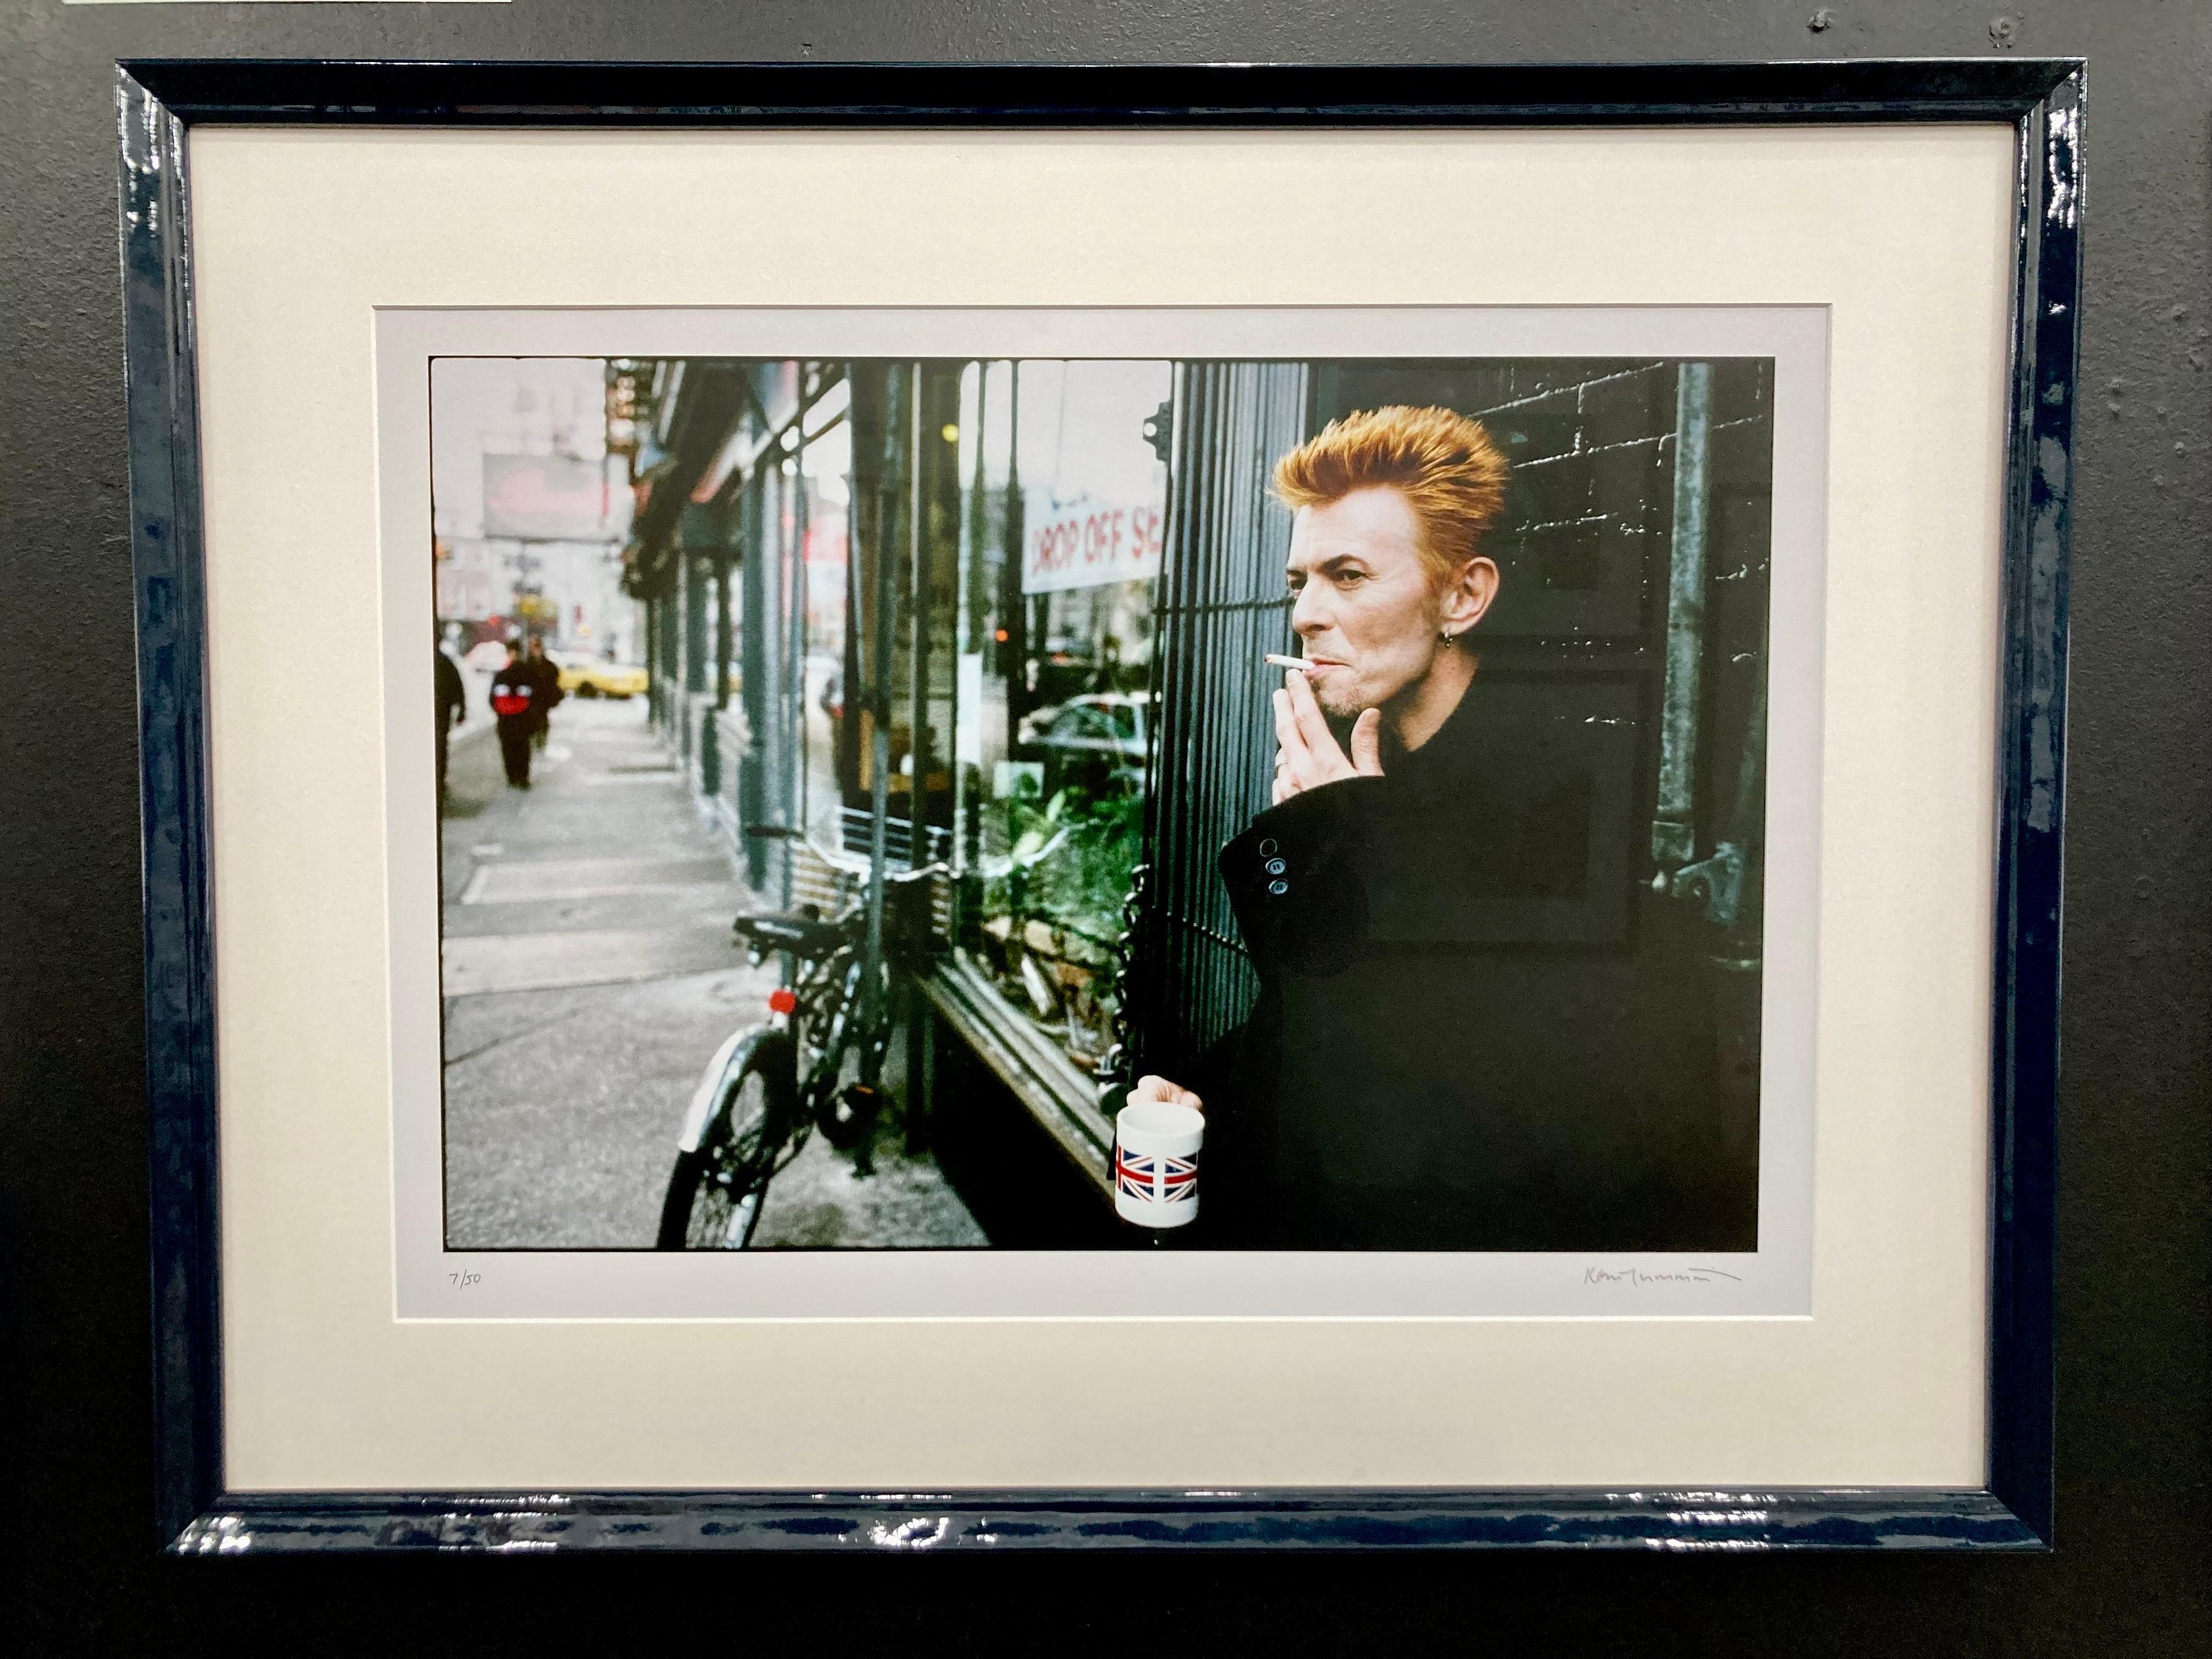 David Bowie Tea and Sympathy New York City, gerahmter signierter Druck in limitierter Auflage – Photograph von Kevin Cummins